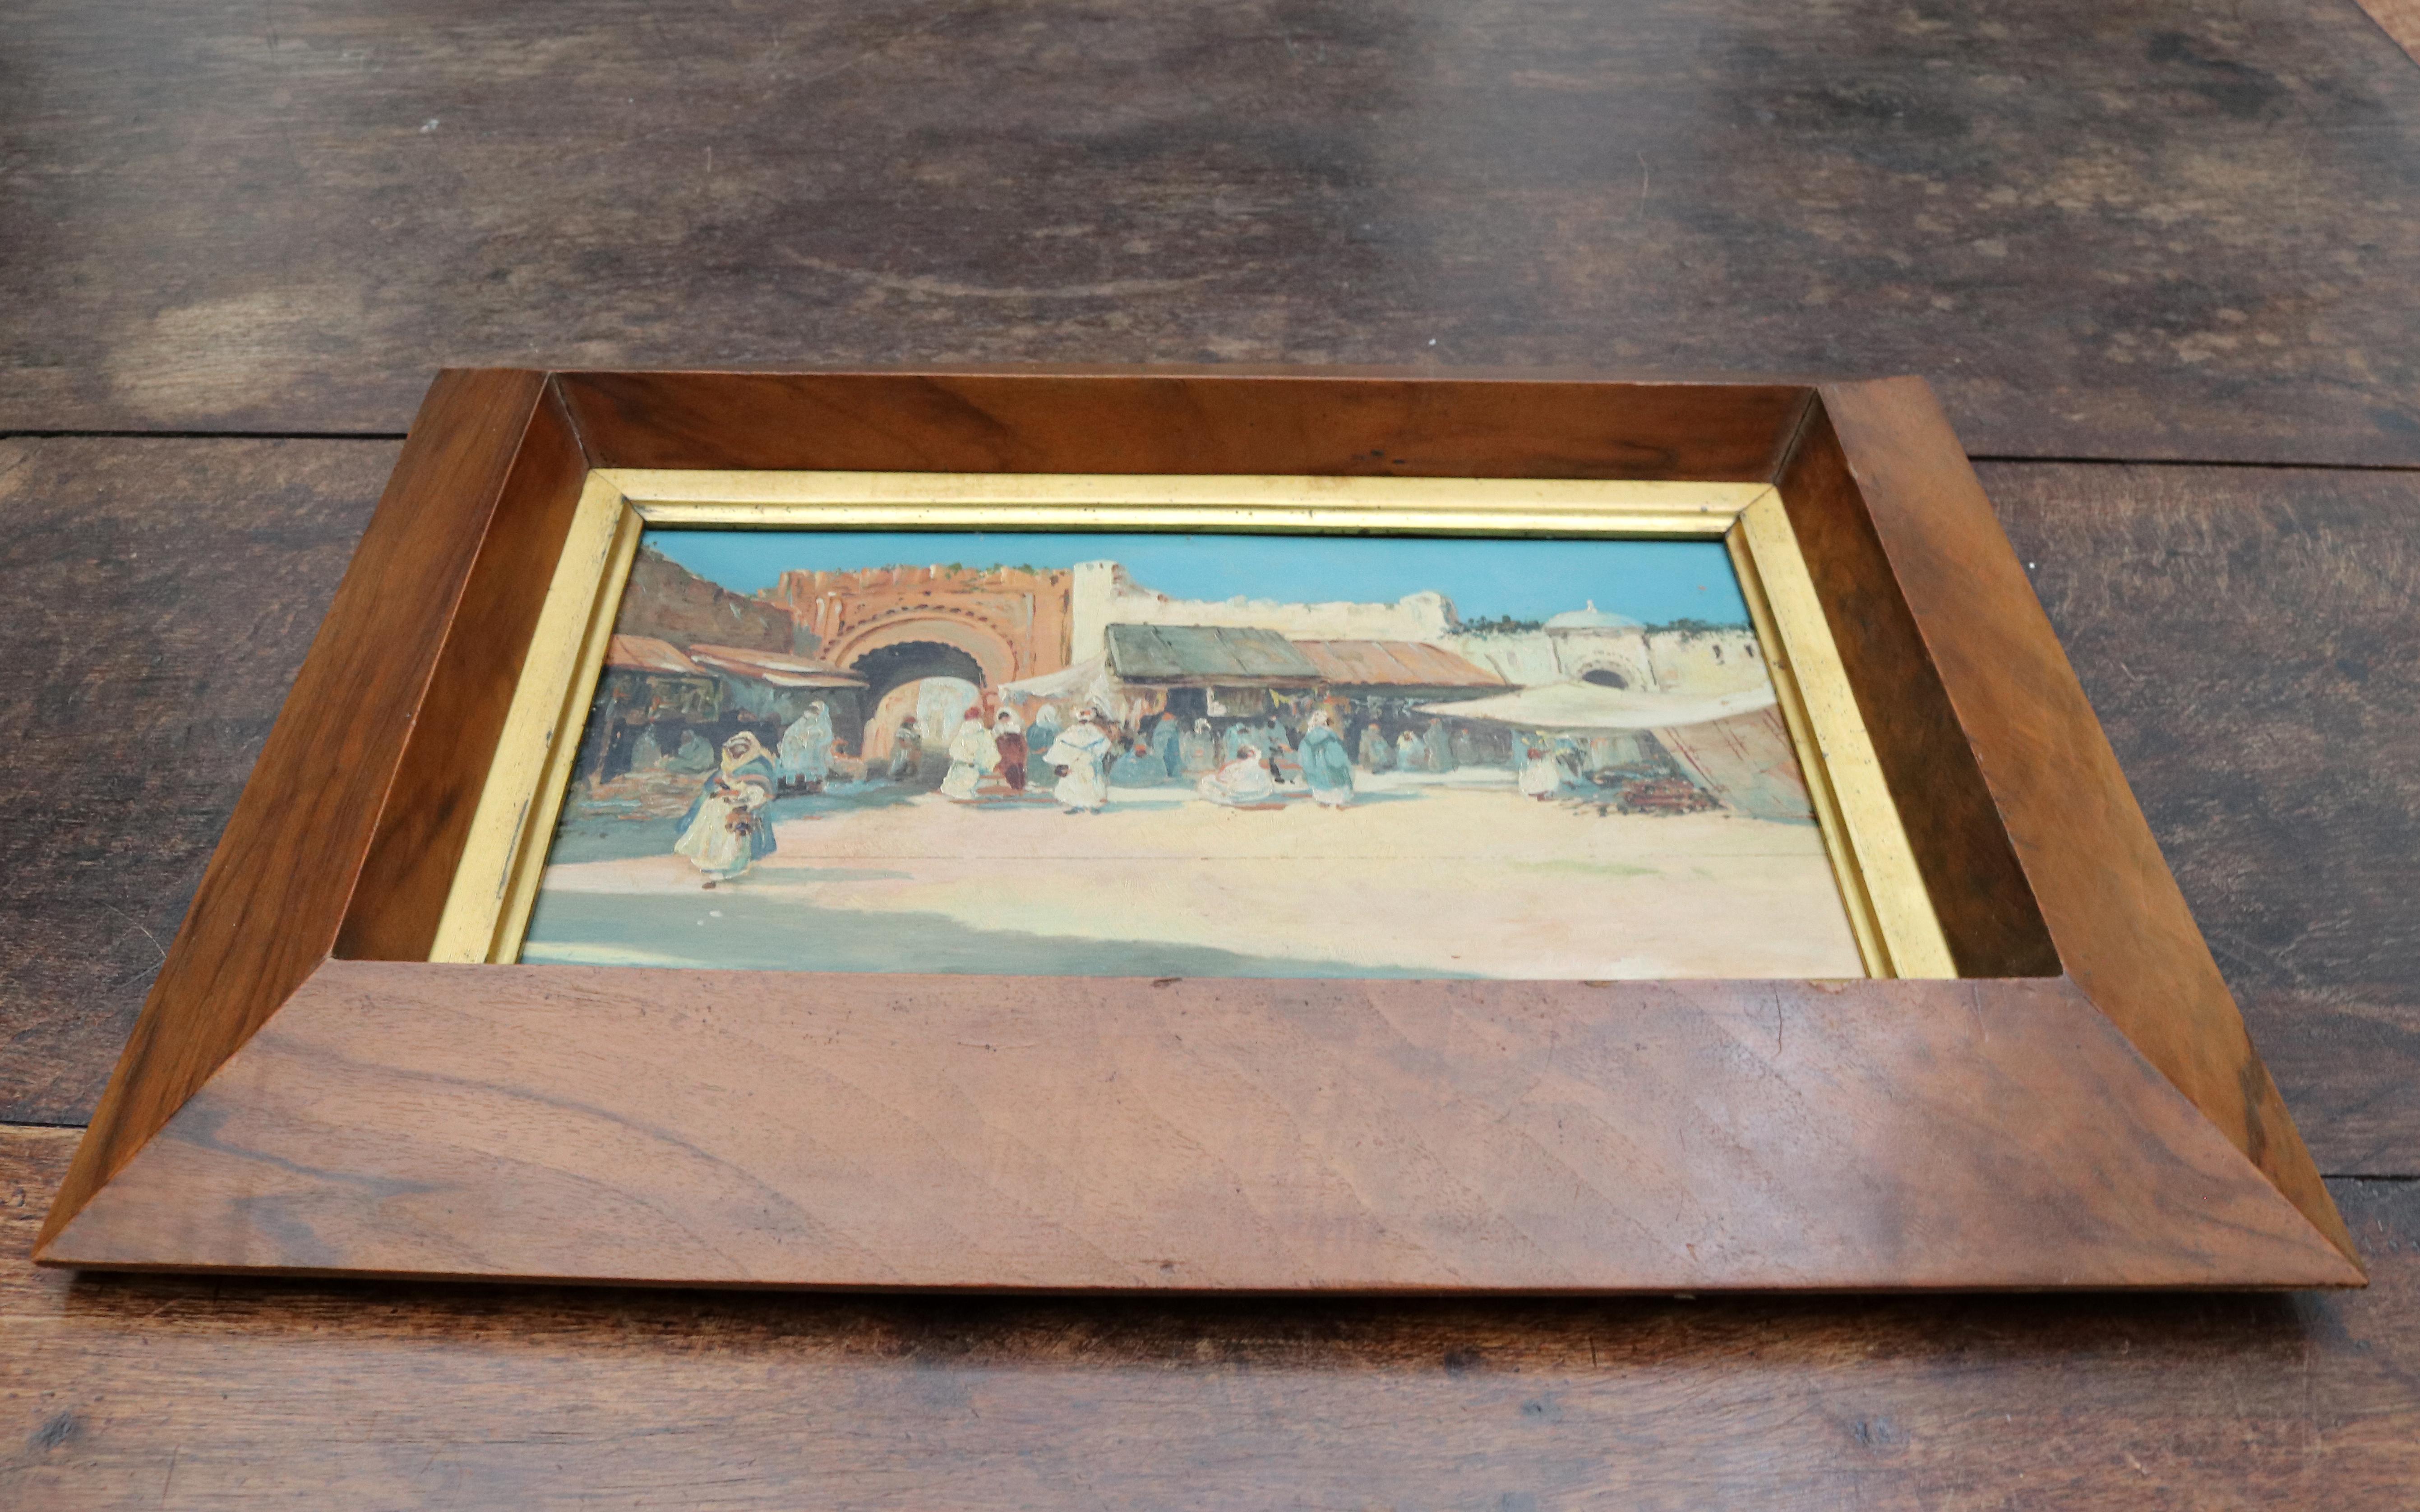 Huile sur bois orientaliste française du 19e siècle avec cadre.

Dimensions avec cadre : 47 x 34 x 5.